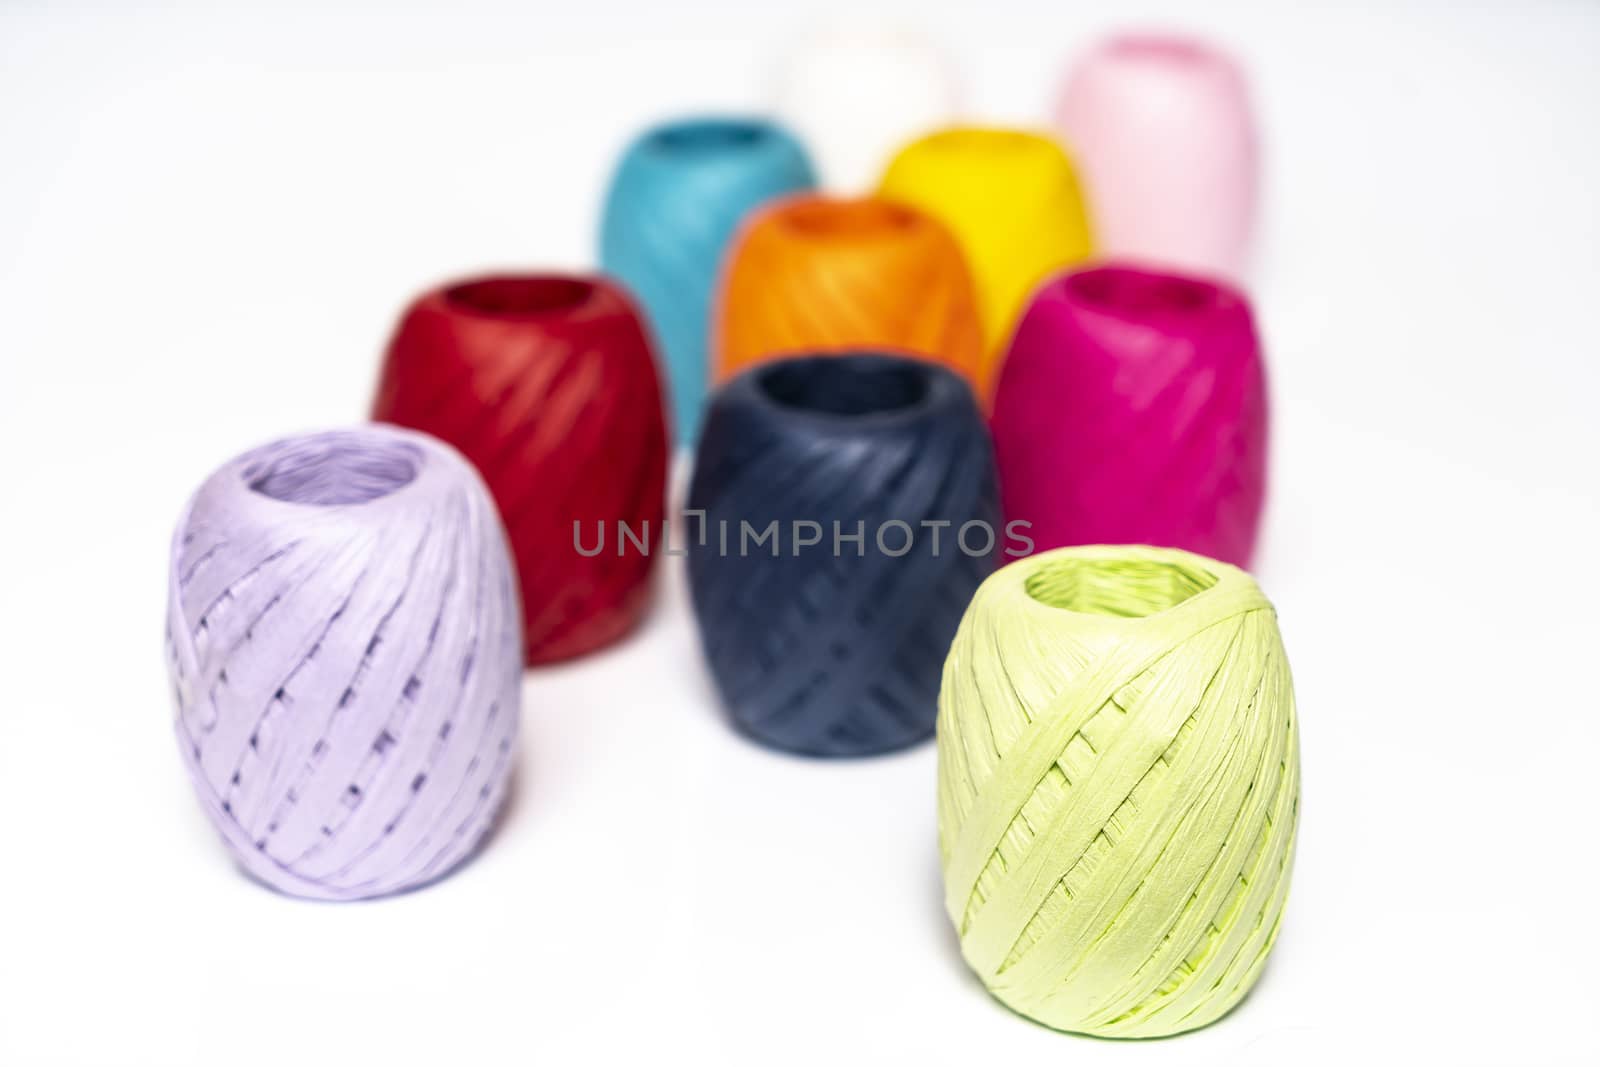 Balls of colored raffia by sergiodv